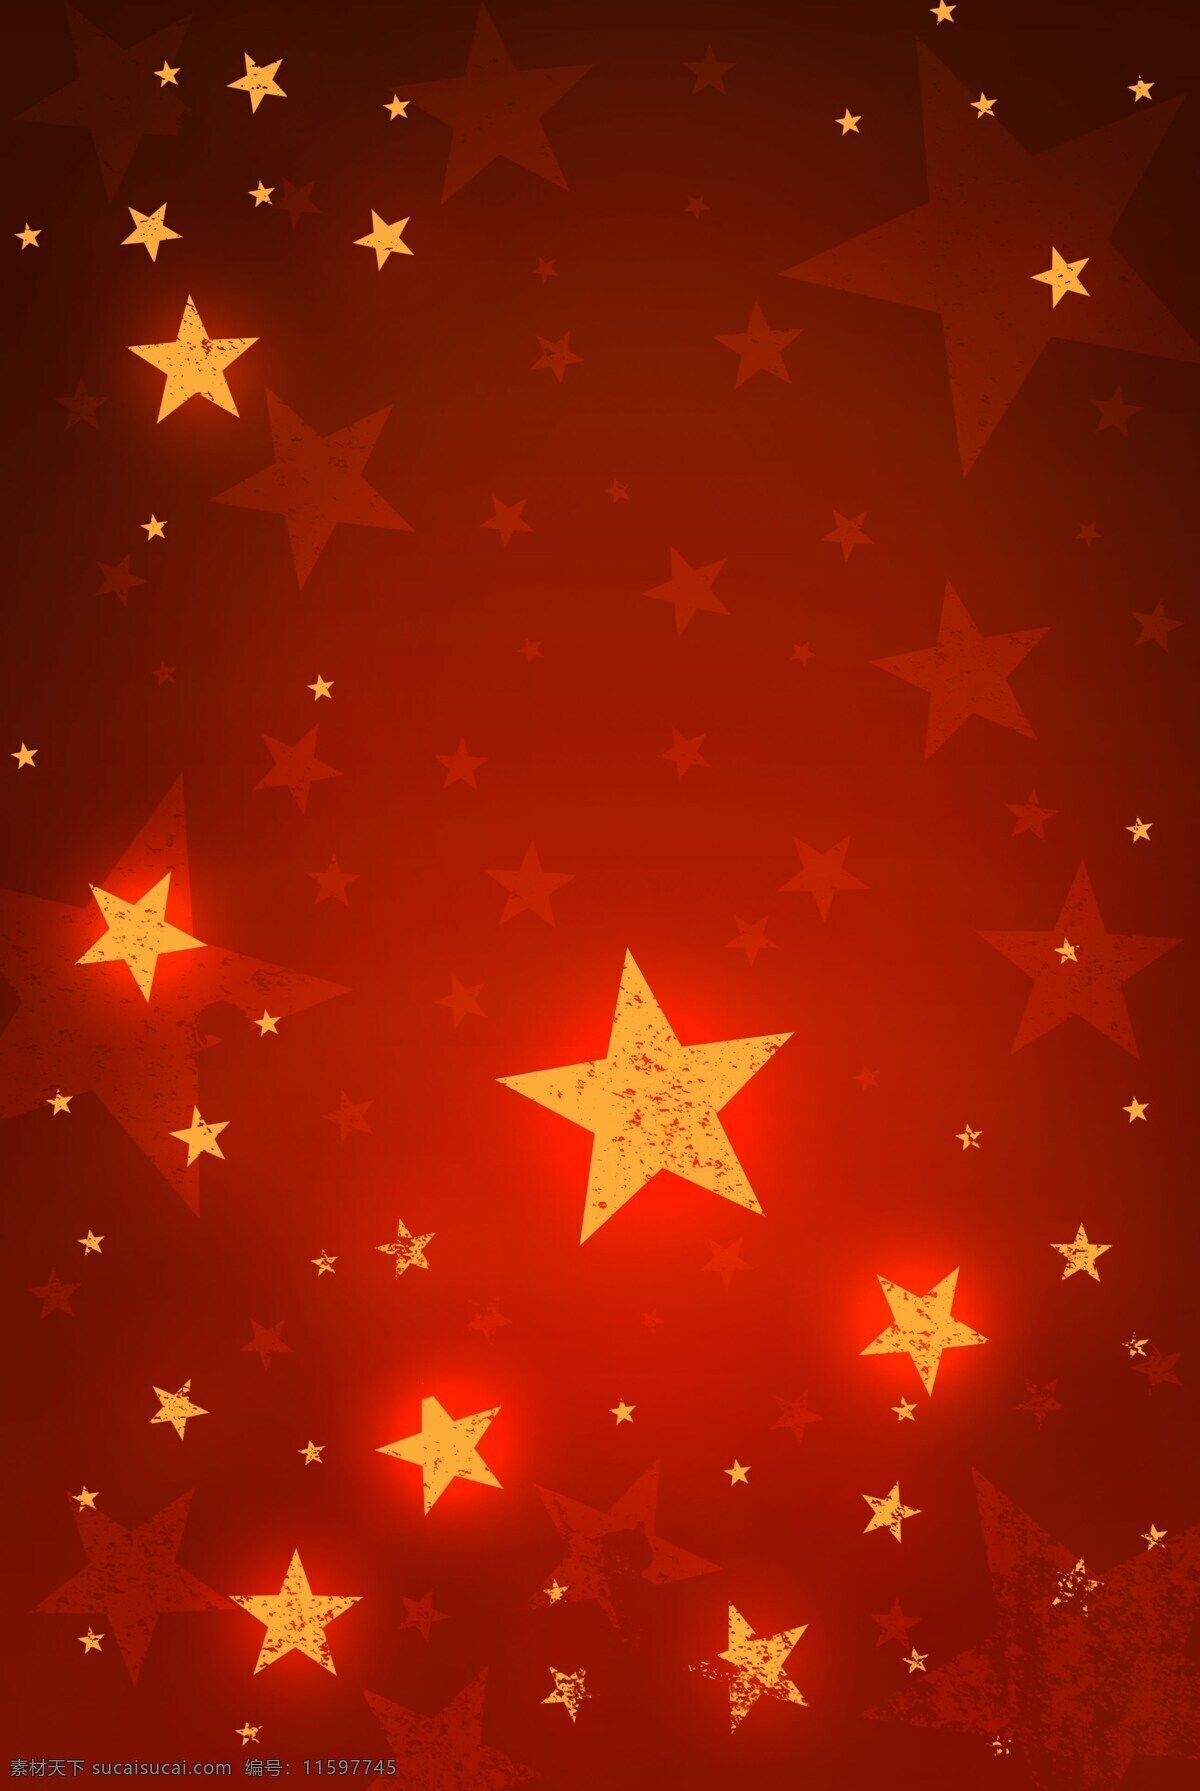 红色 星星 背景 大图 抽象 圣诞节 背景图片